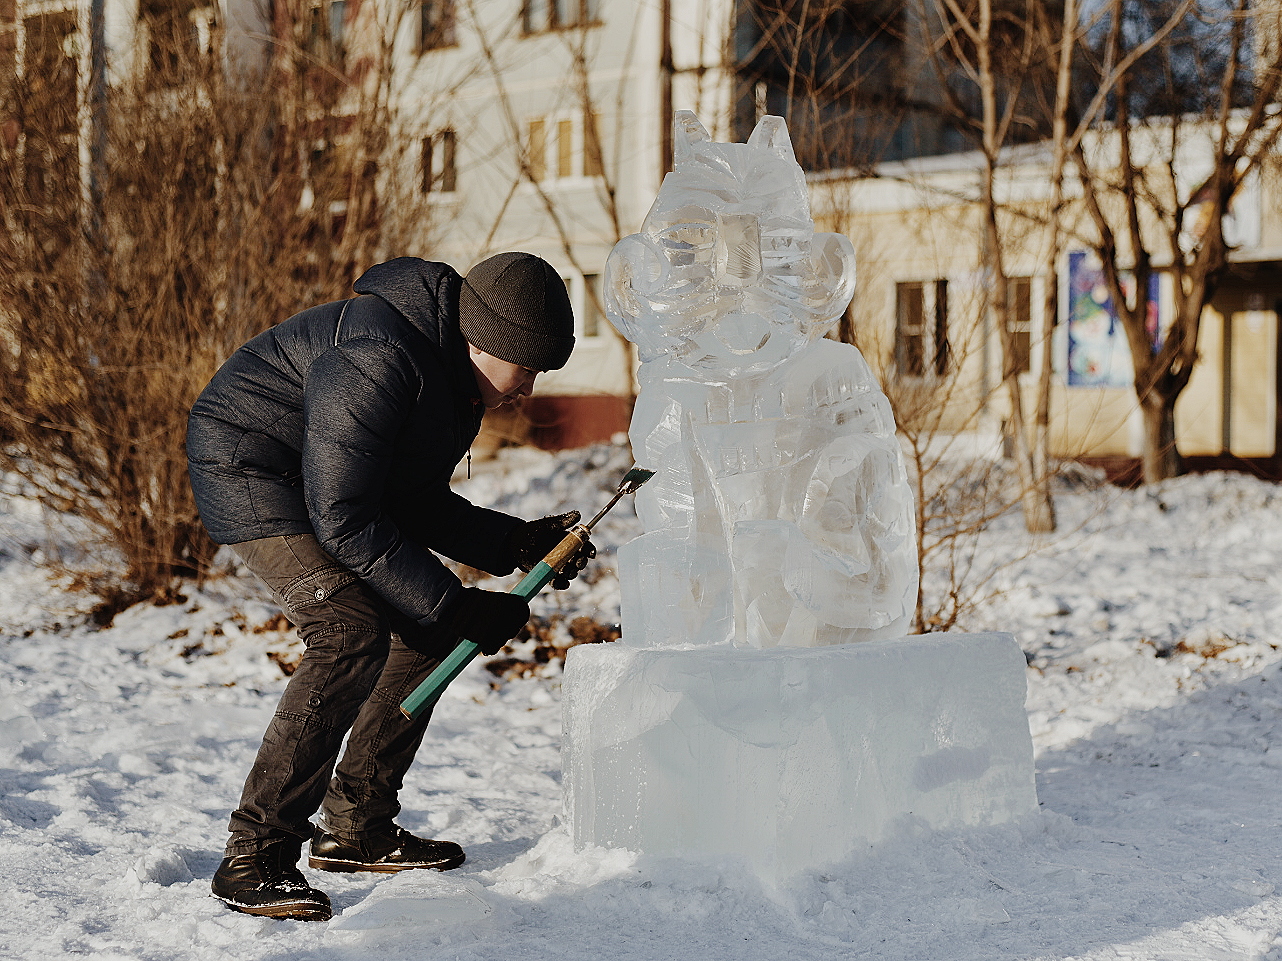 Скульптуры изо льда